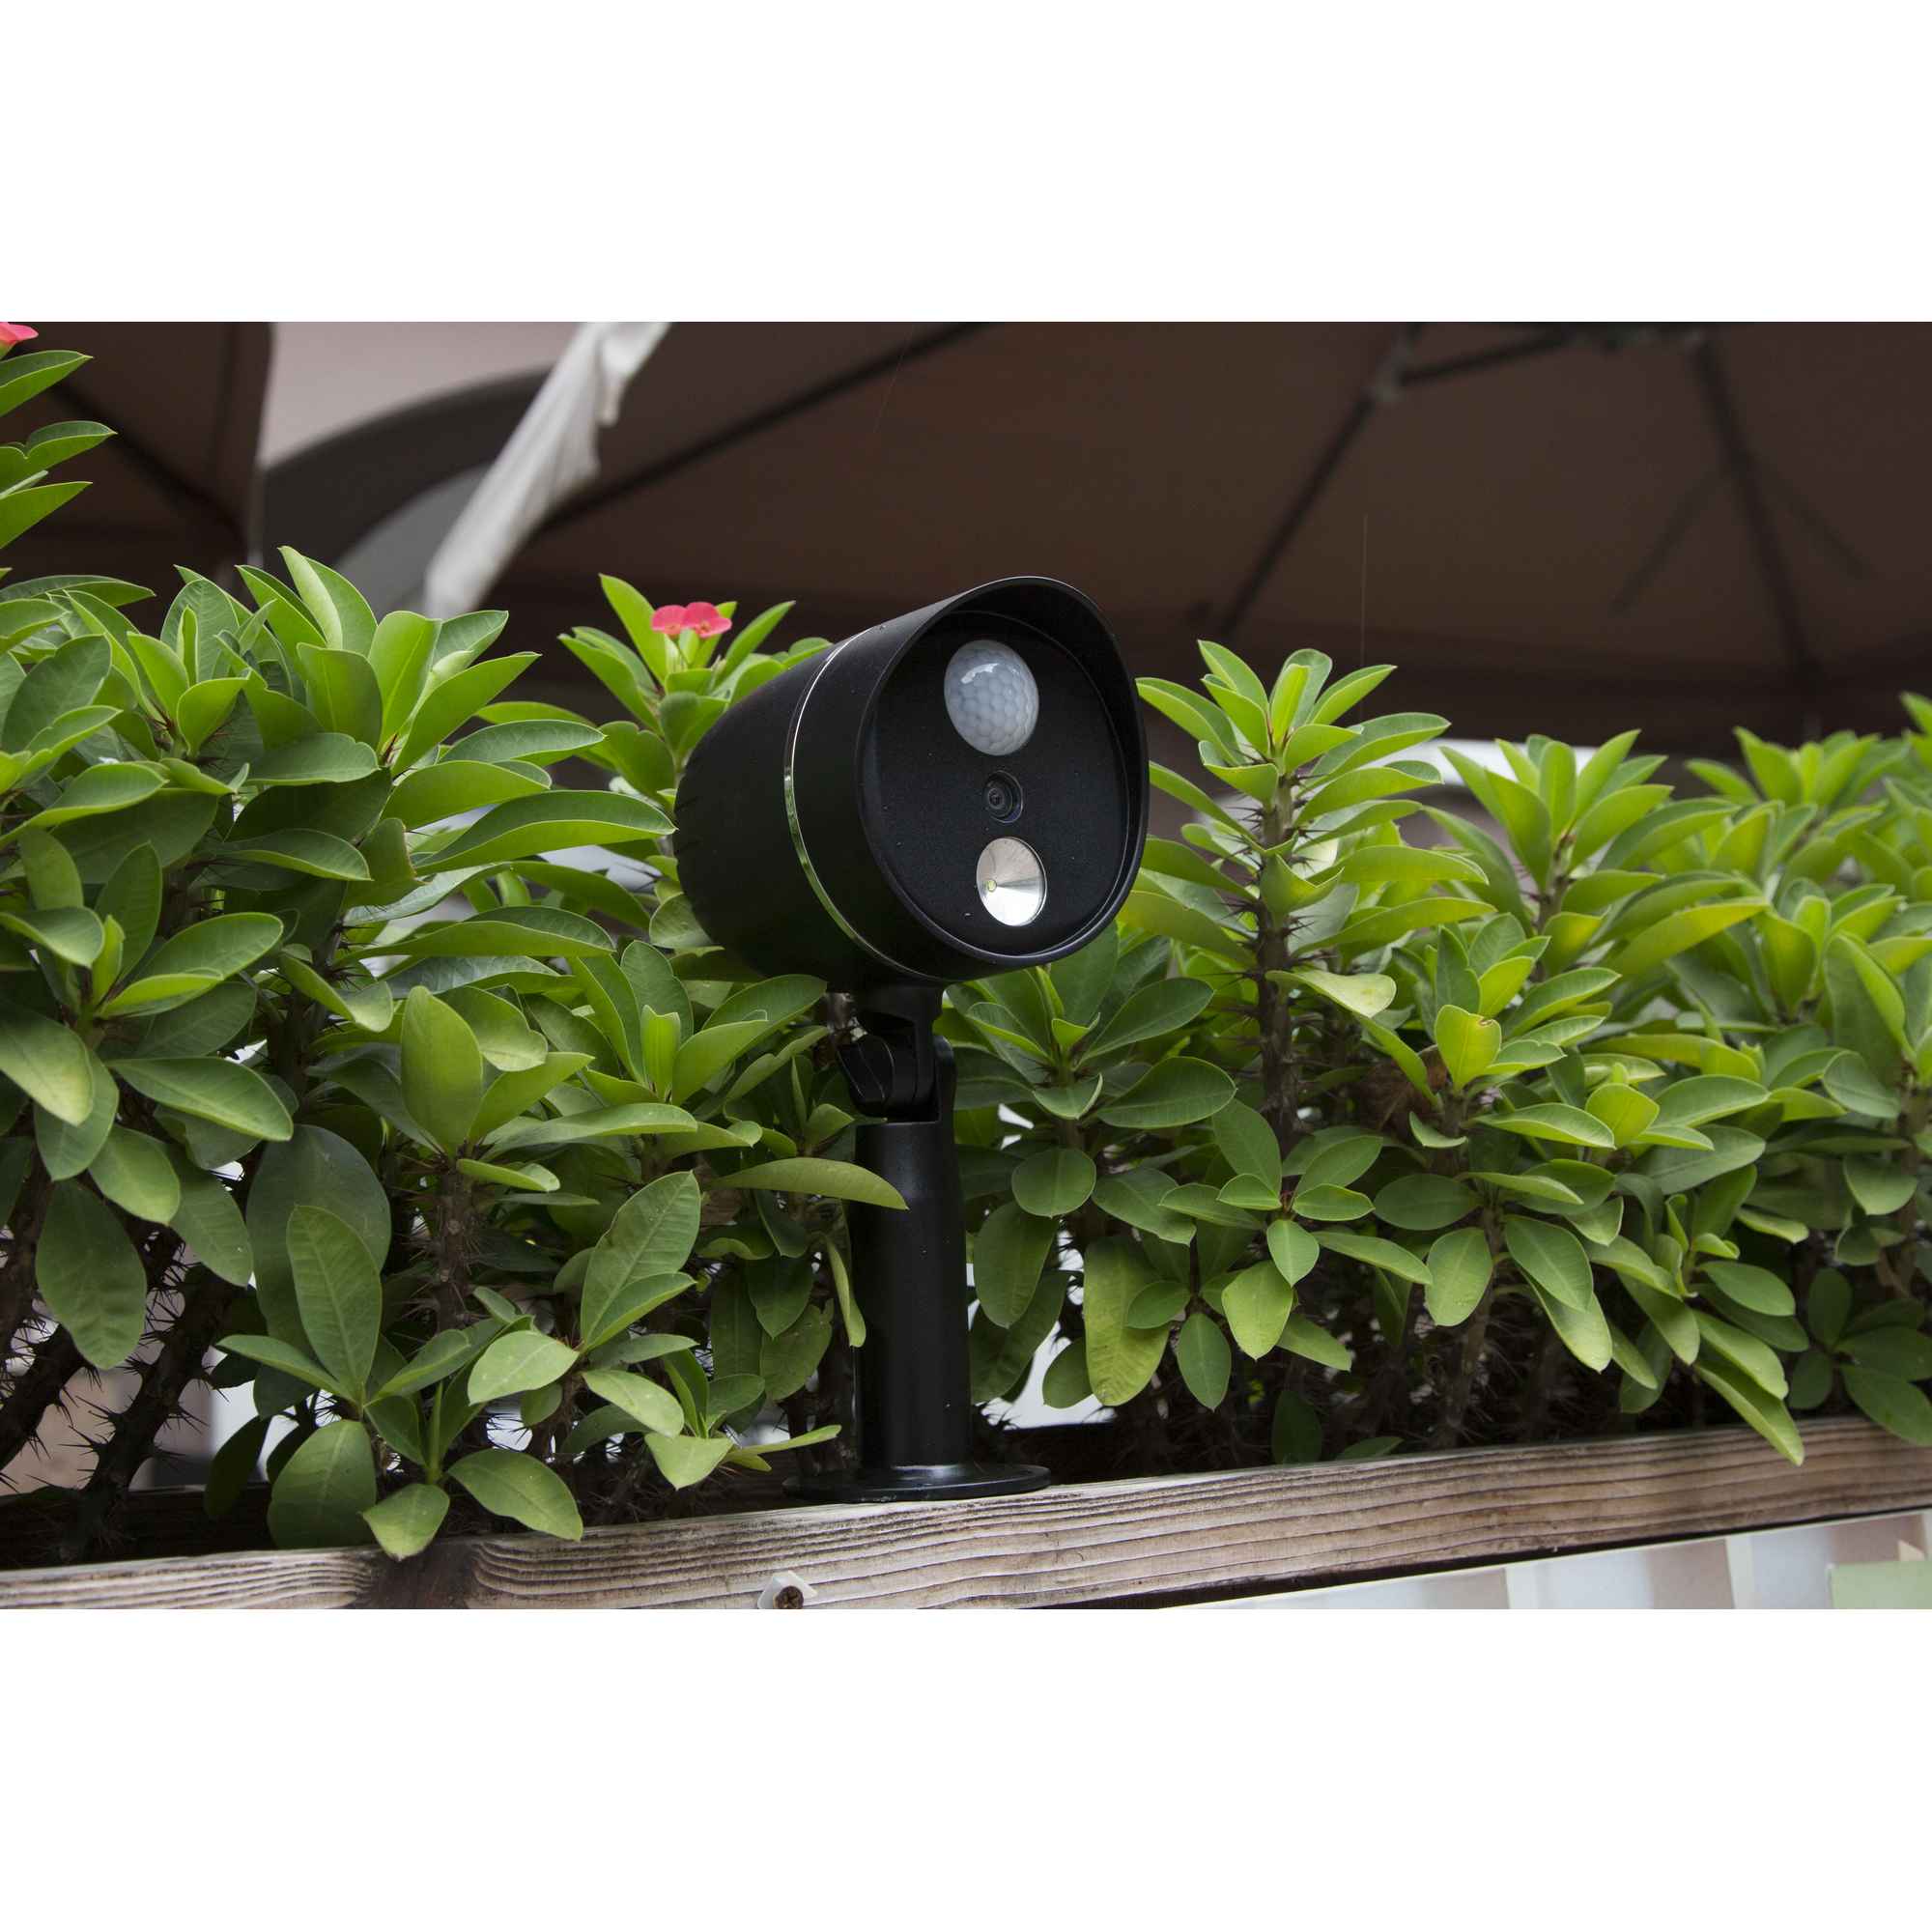 HD-Außenkamera 'TX-106' mit LED-Lampe, batteriebetrieben, schwarz + product picture